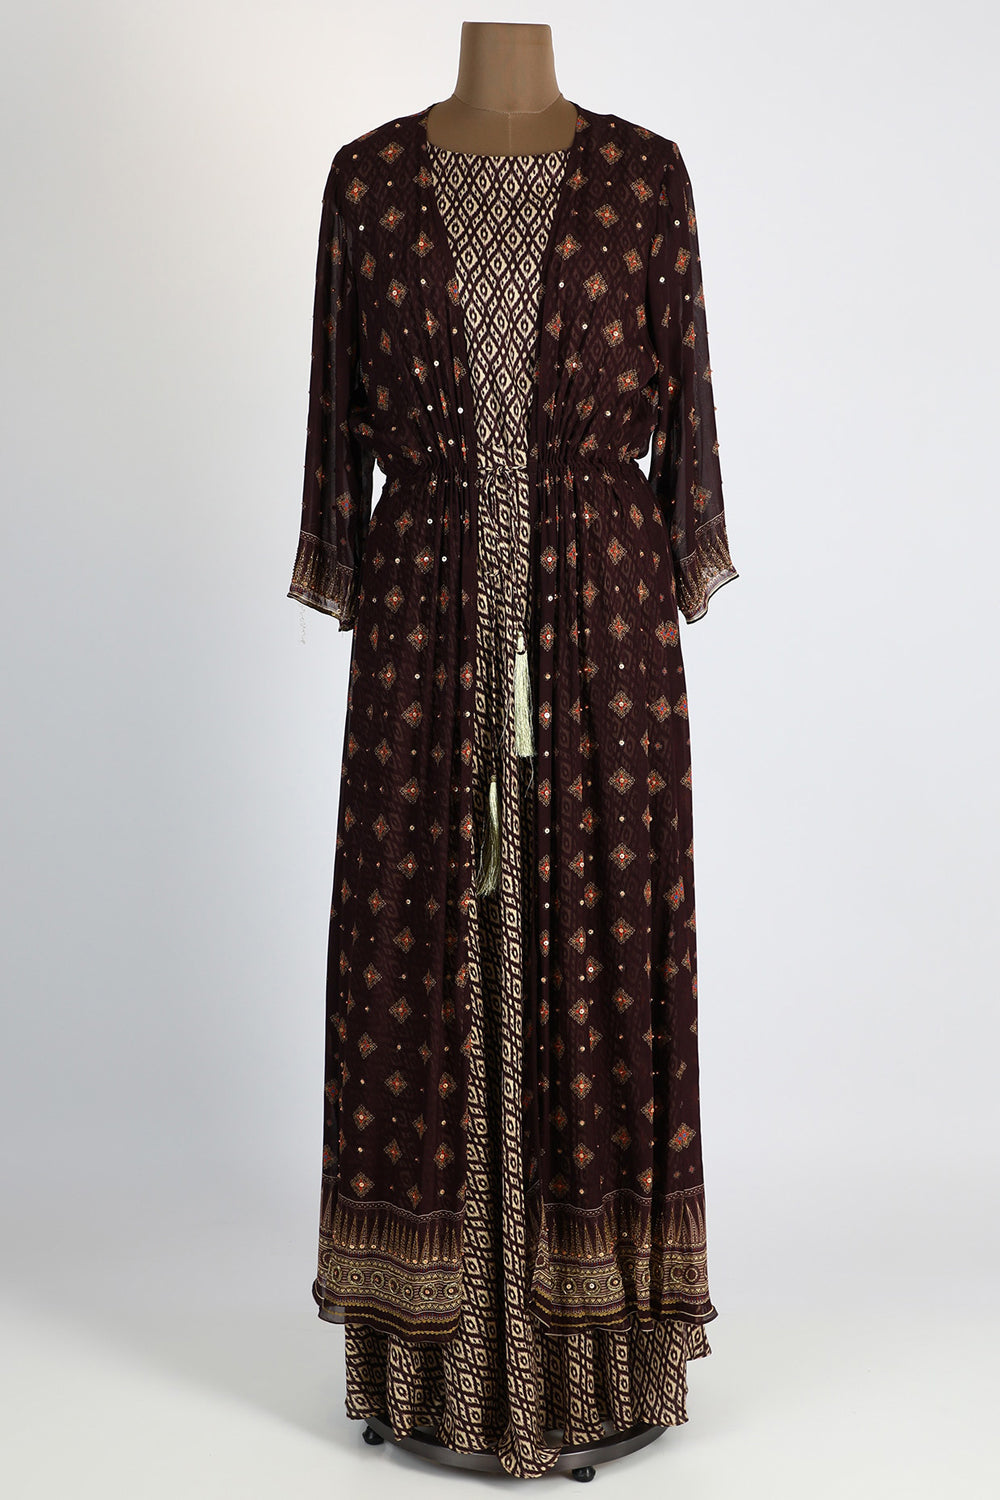 Silk Beige Printed Dress With Maroon Jacket